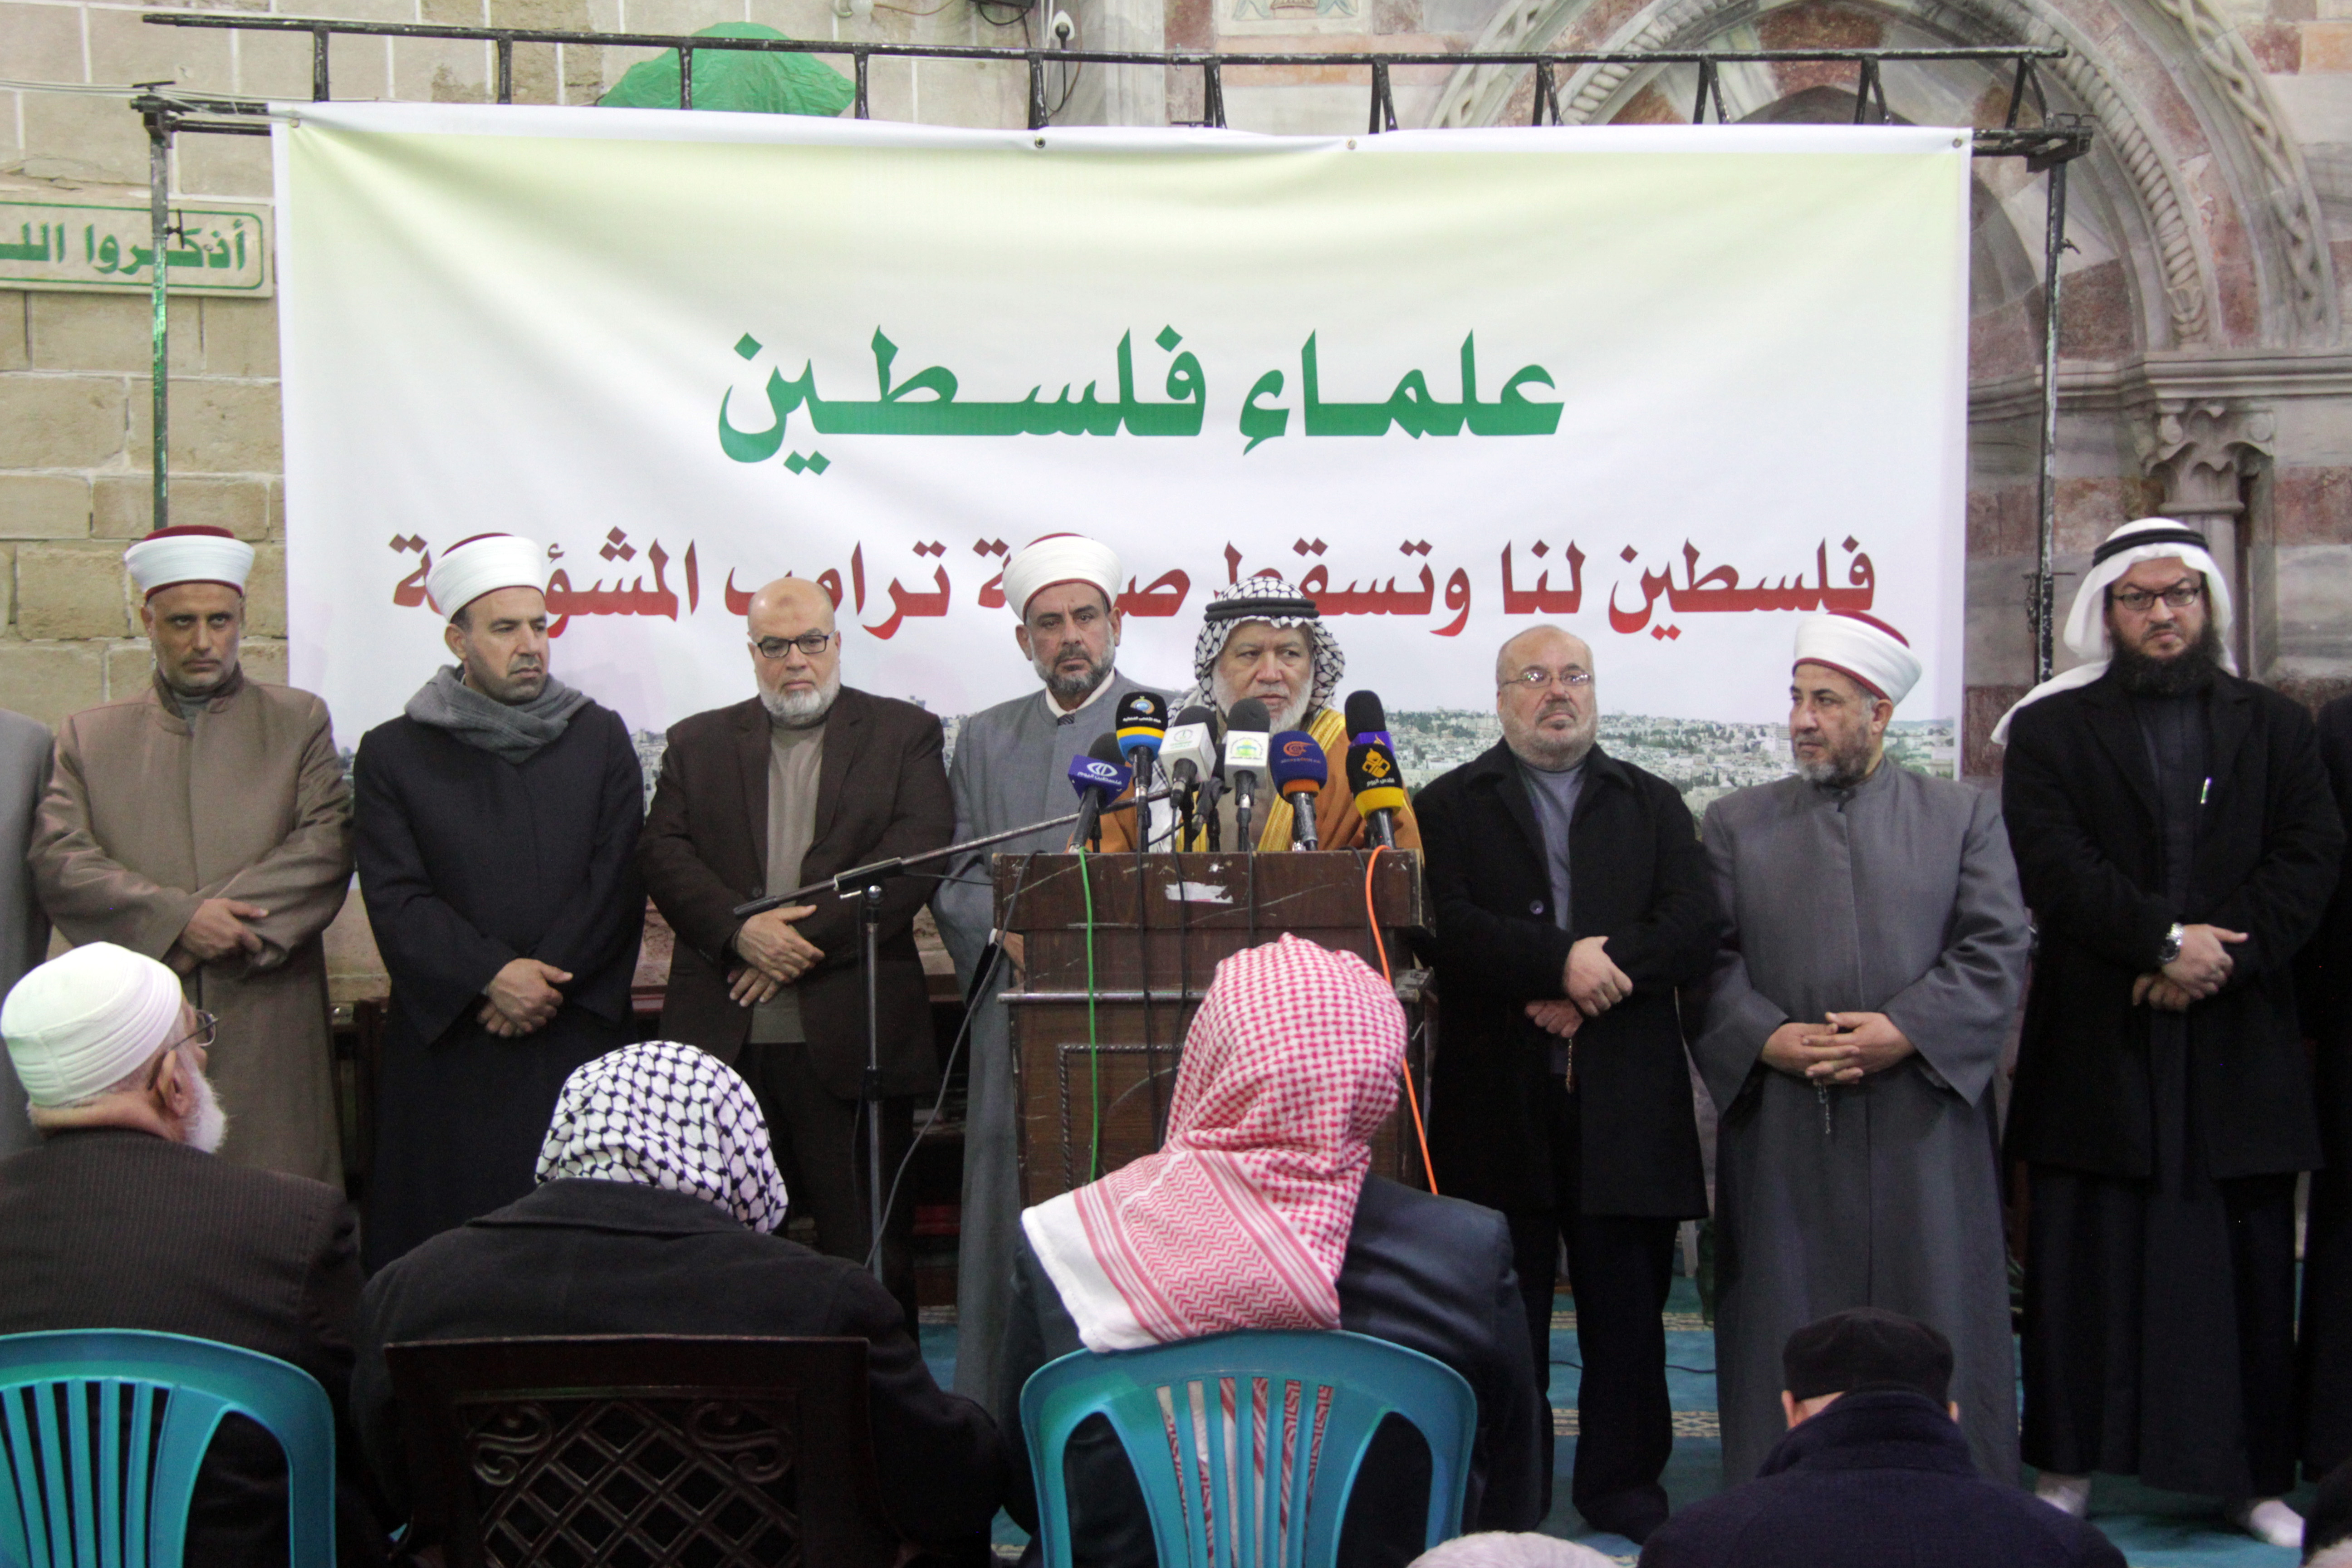 علماء فلسطين تنظم اعتصاما بغزة رفضاً لصفقة ترمب المشؤومة